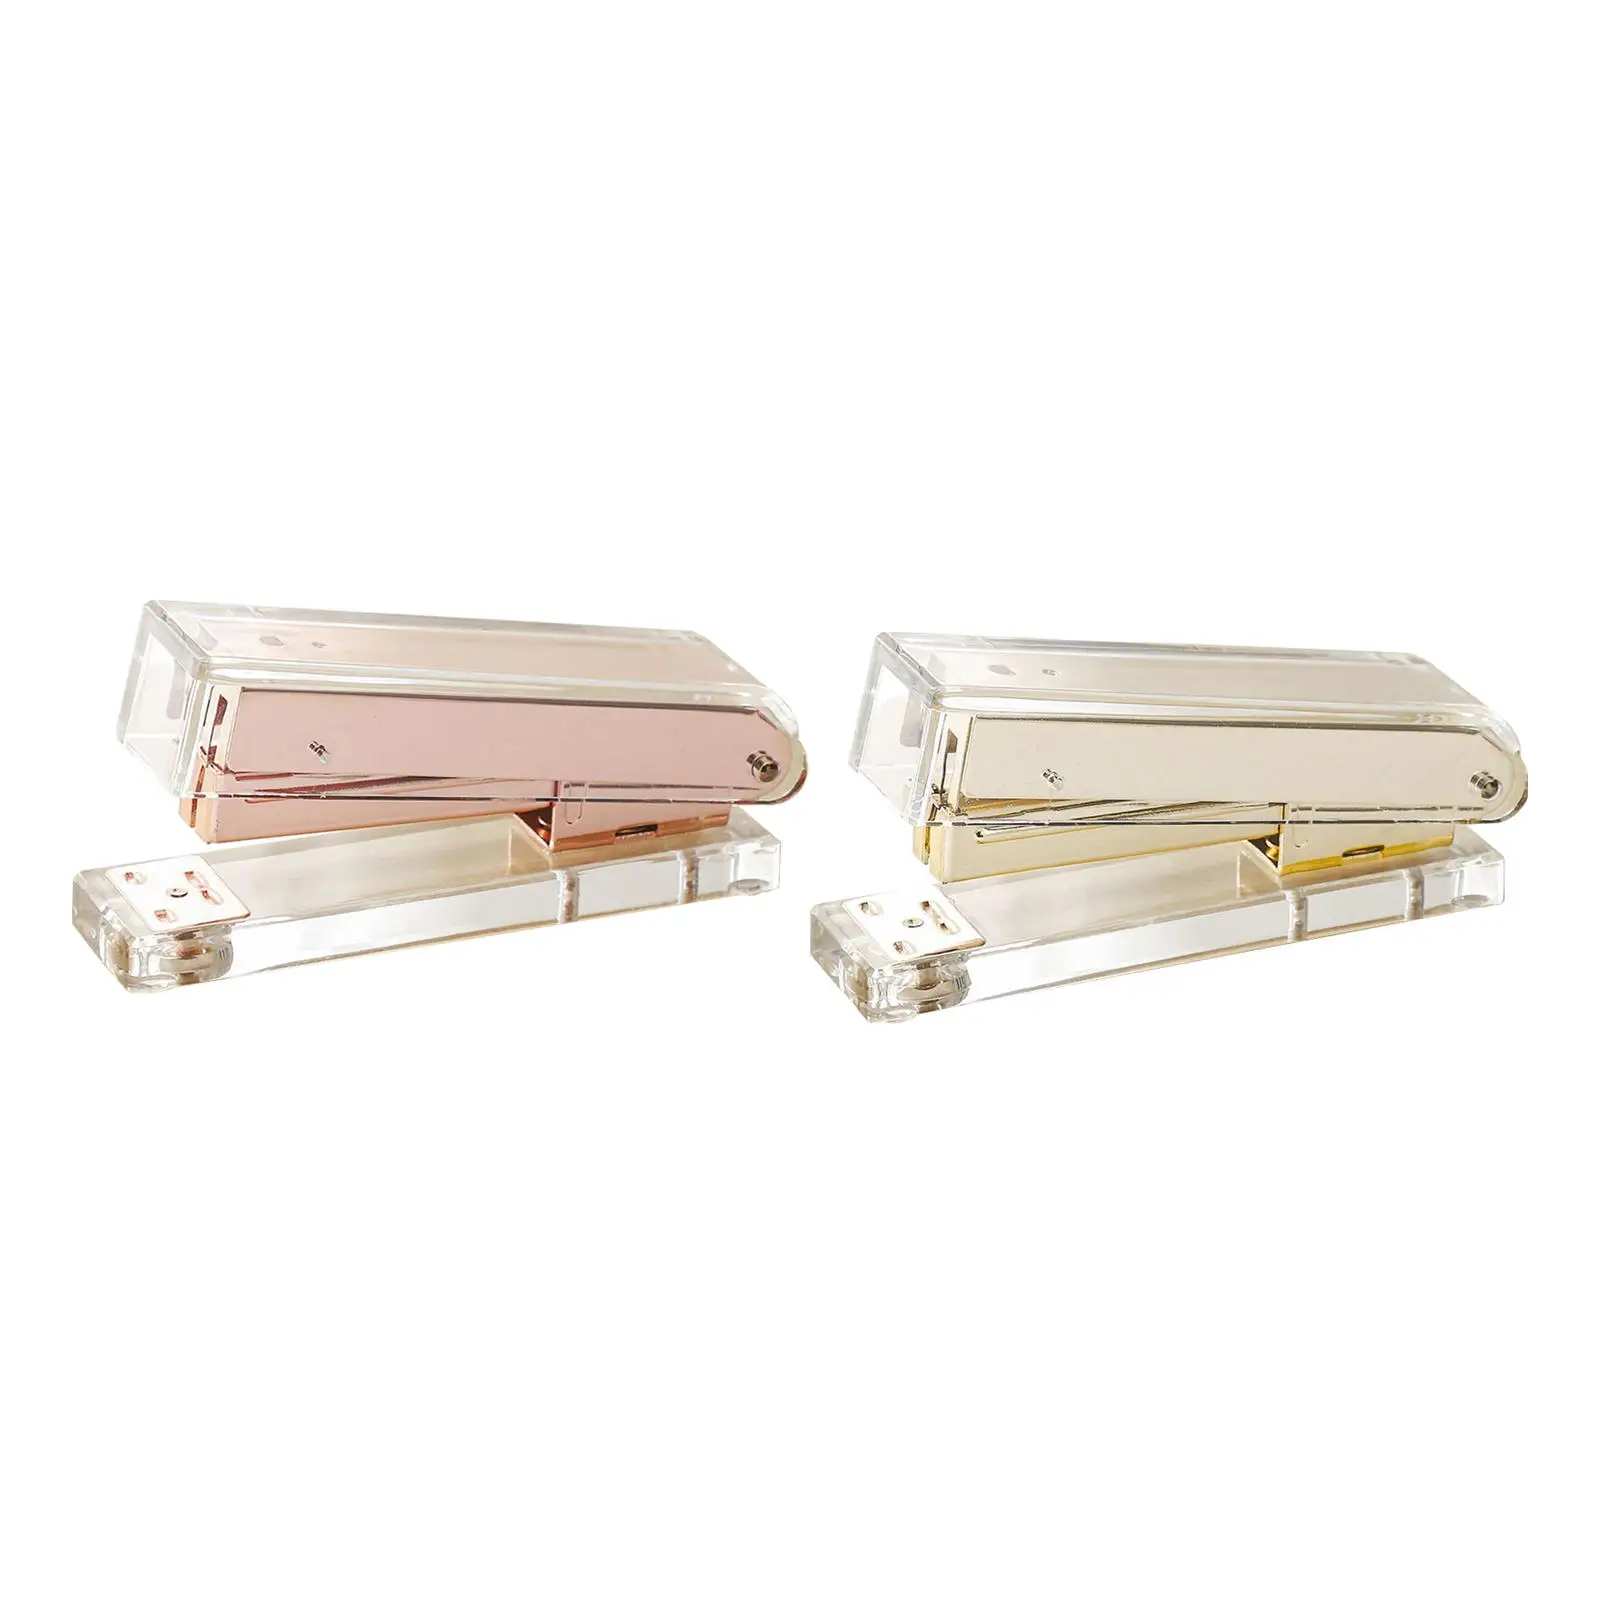 Rose Gold/Gold Desktop Stapler Stationery Accessories Gift Transparent Acrylic Standard Stapler Stapler for Home School Office